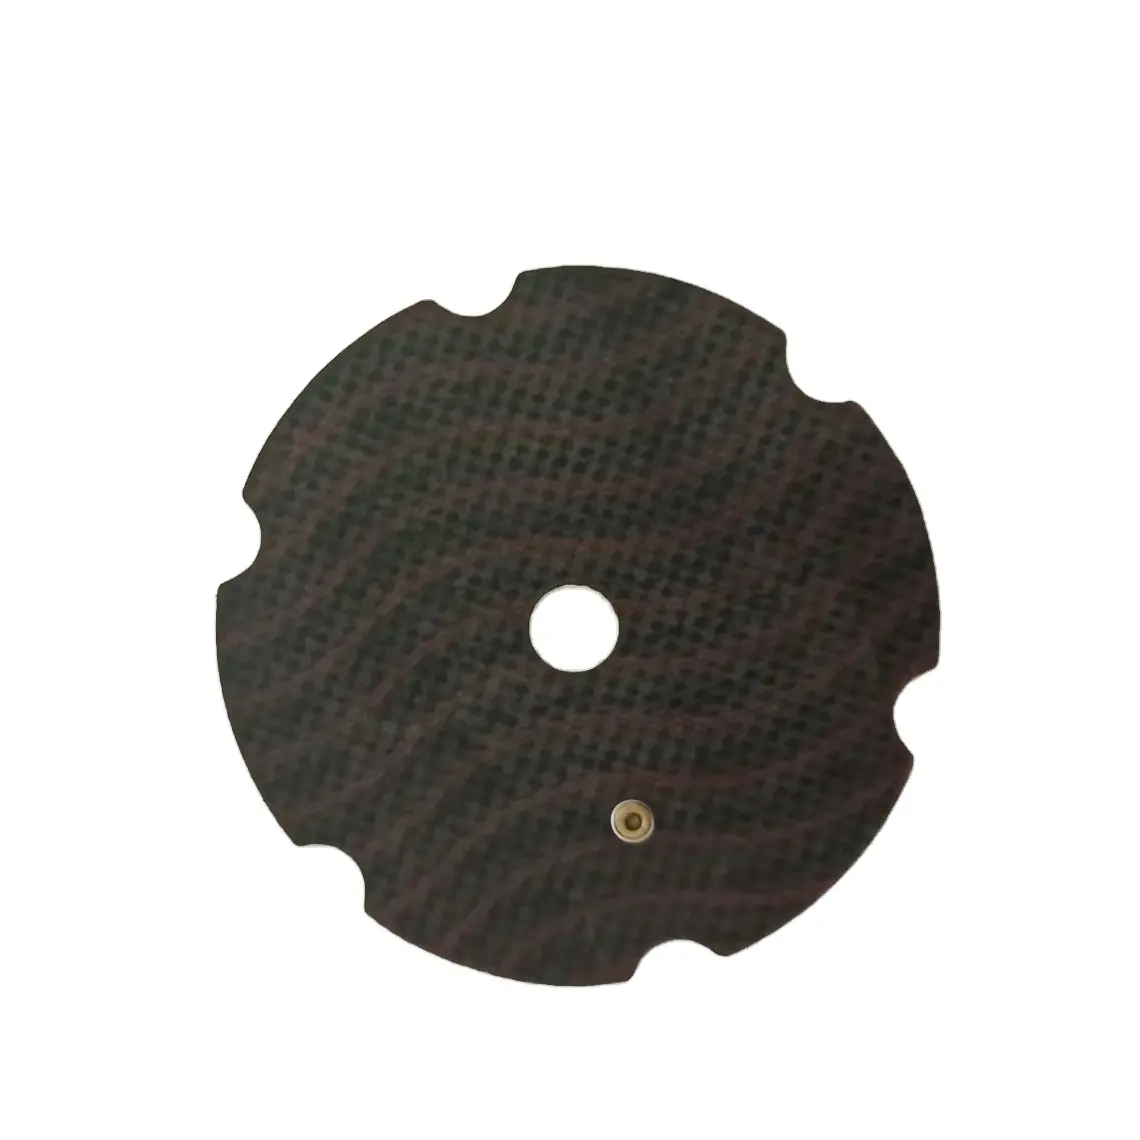 Kit pneumático diafragma de AD-64.5-600mm de borracha, material de diafragma importado para válvula de pulso solenóide coletor de poeira